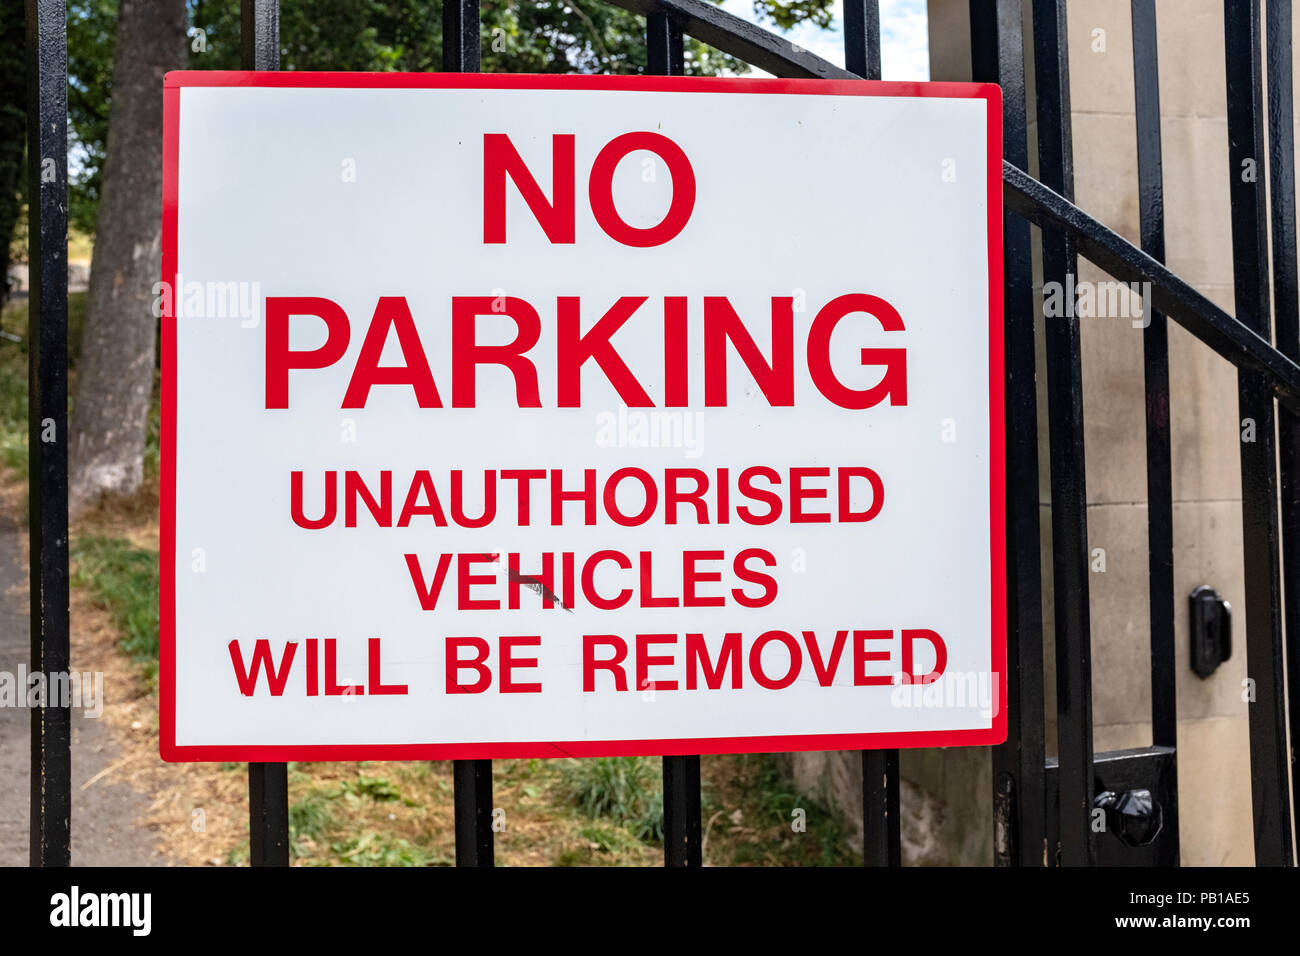 Rosso e bianco, nessun parcheggio veicoli non autorizzati saranno rimossi segno su nero ringhiere in ferro. Foto Stock